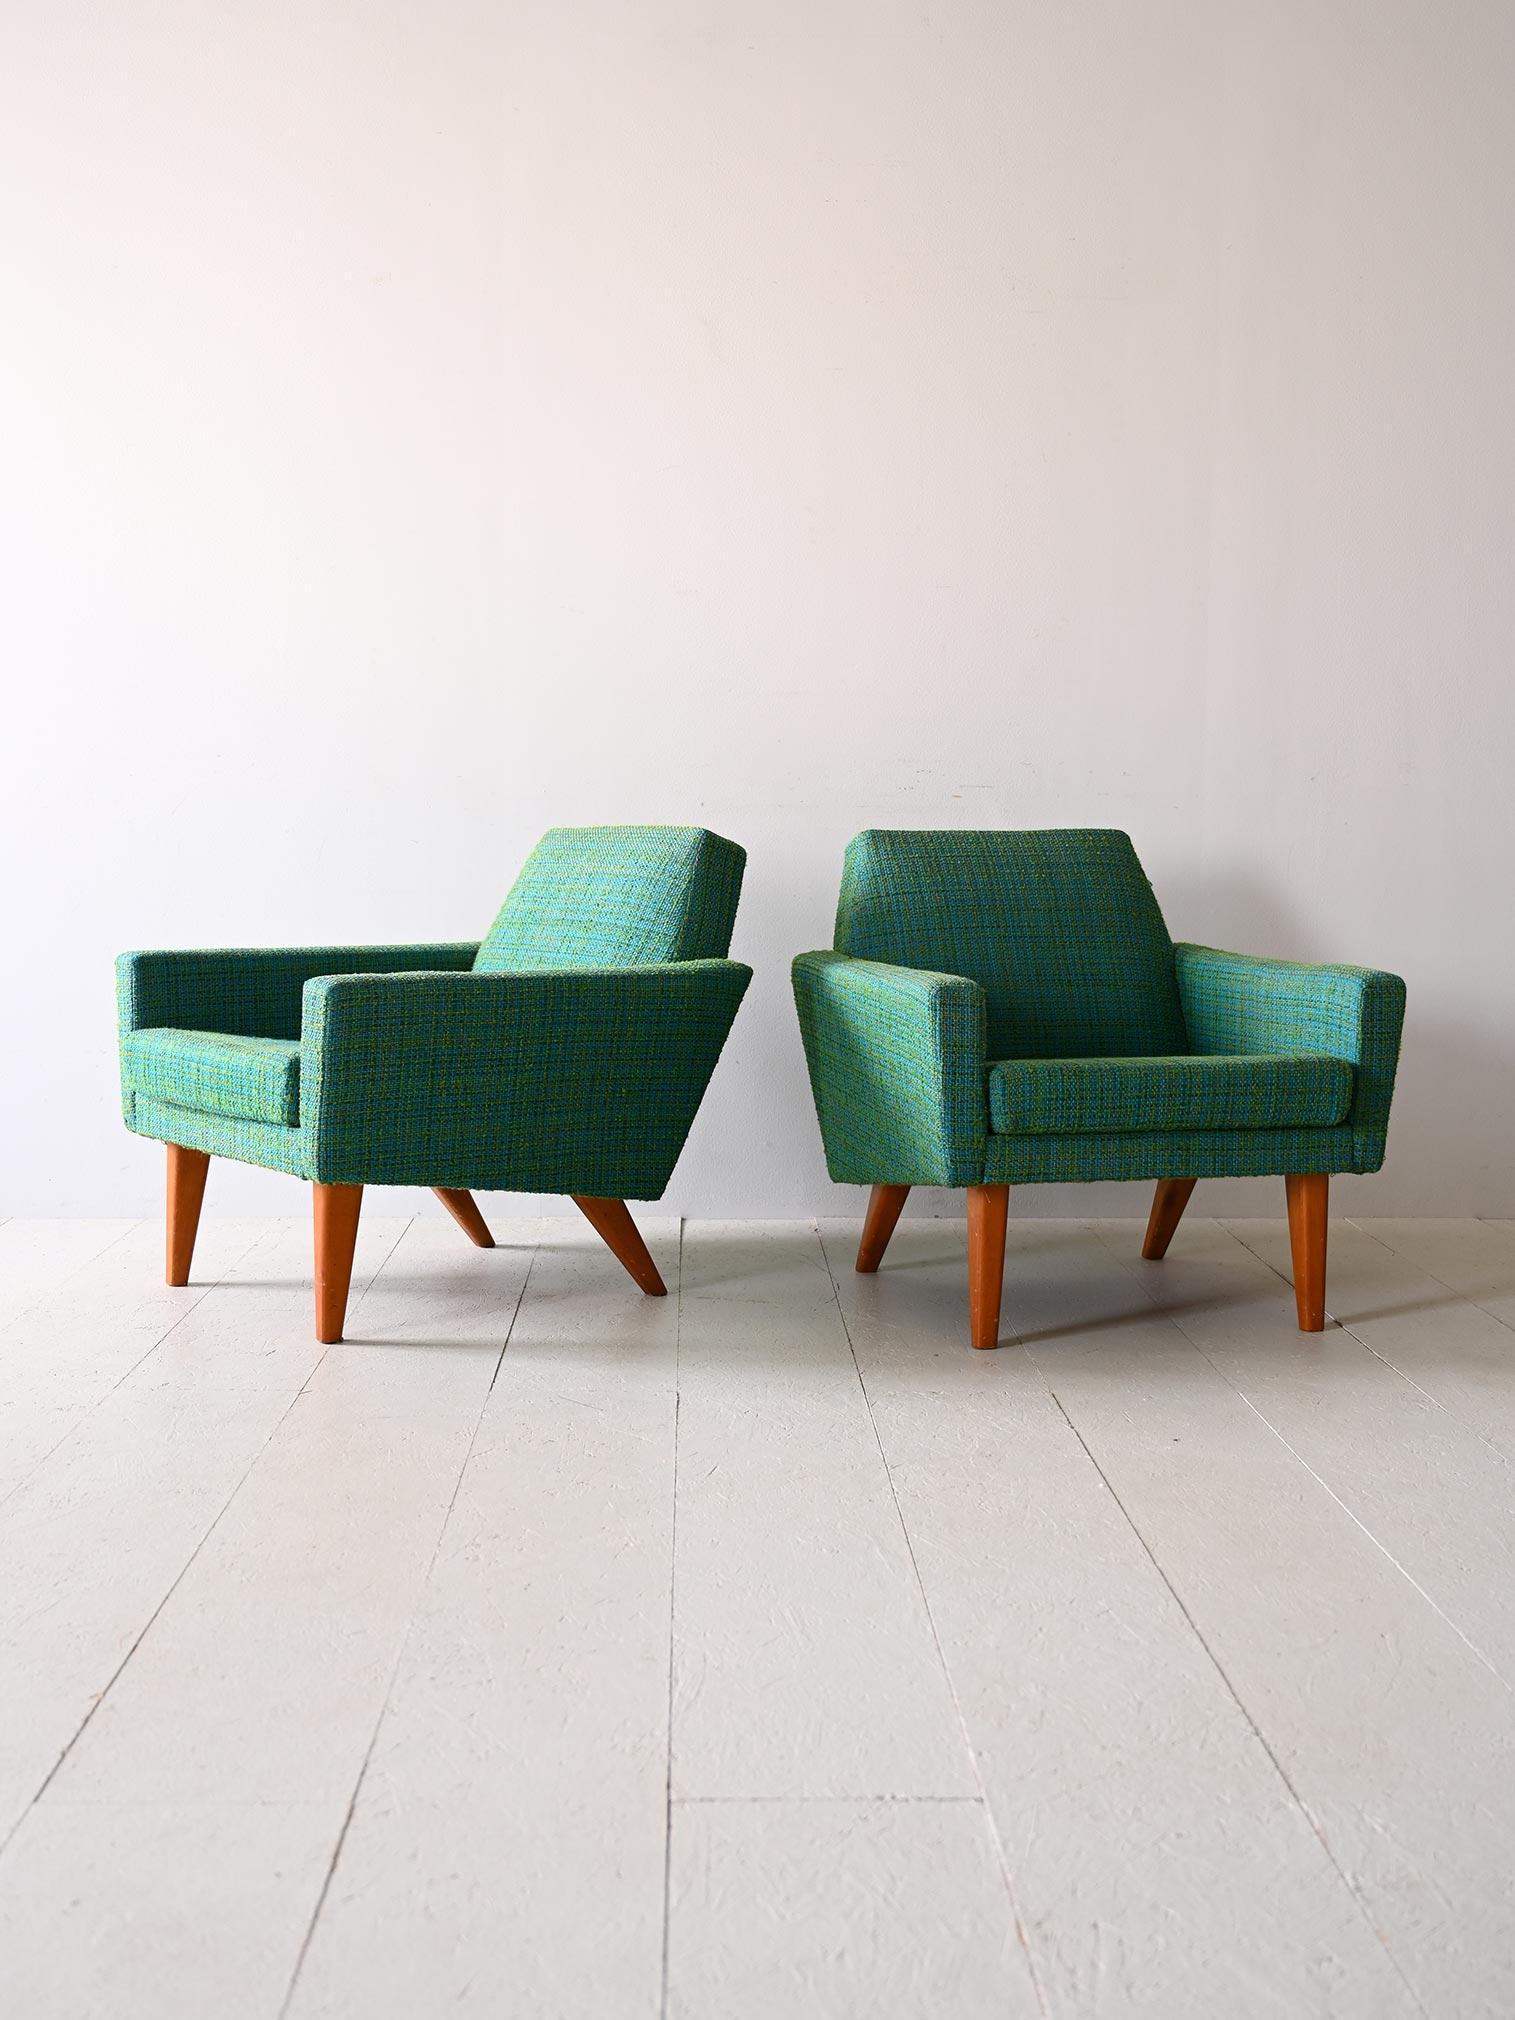 Zwei originale Vintage-Sessel aus den 1960er Jahren.

Original skandinavische Stühle, die sich durch ihre originelle quadratische Form mit markierten Ecken auszeichnen.

Der grüne Stoff ist original, ebenso wie die Polsterung, die noch in gutem